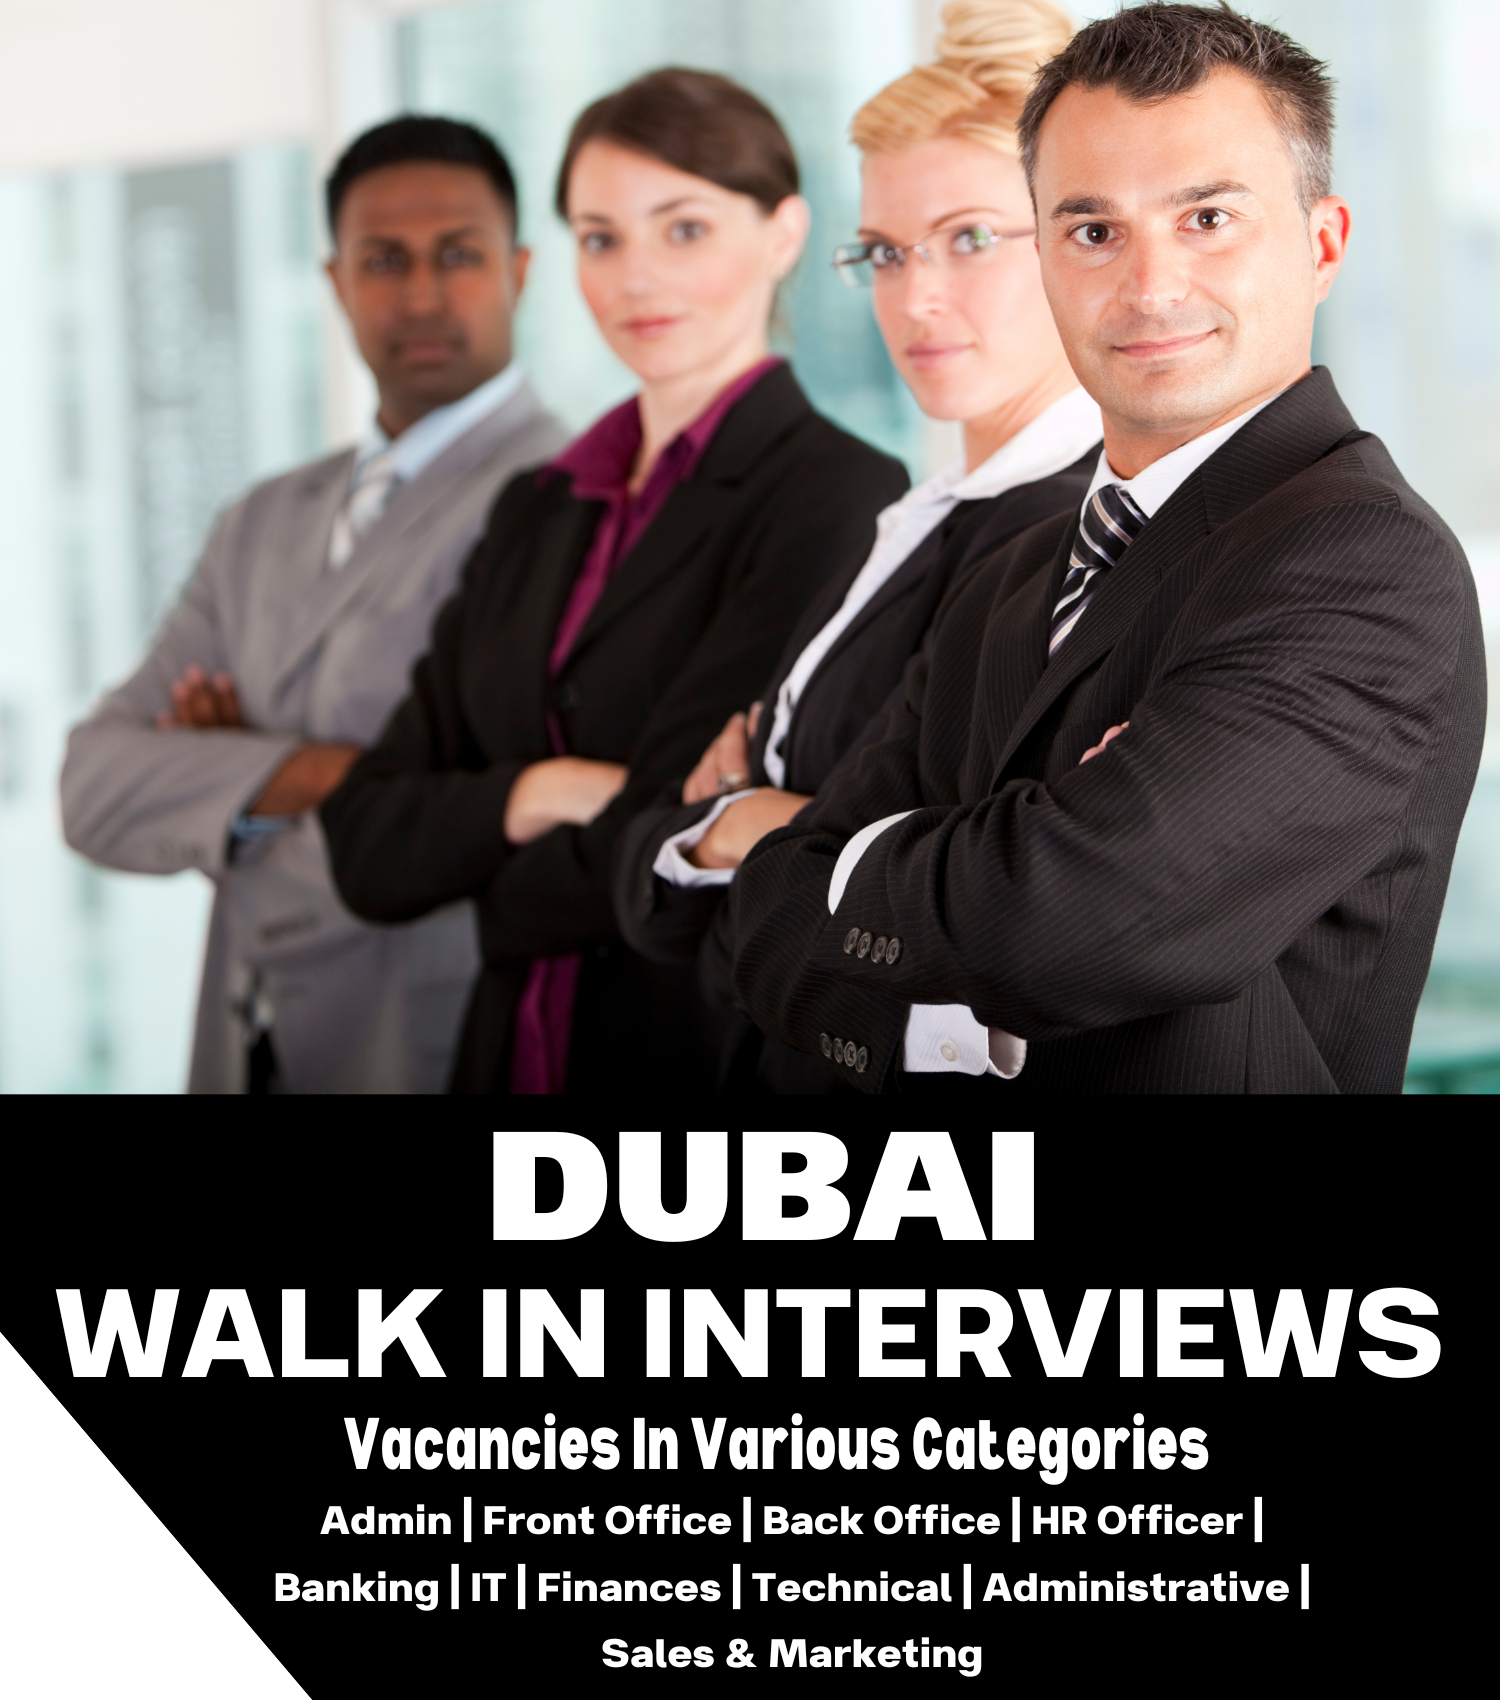 Walk in Interview in Dubai - Walk in Interview in UAE